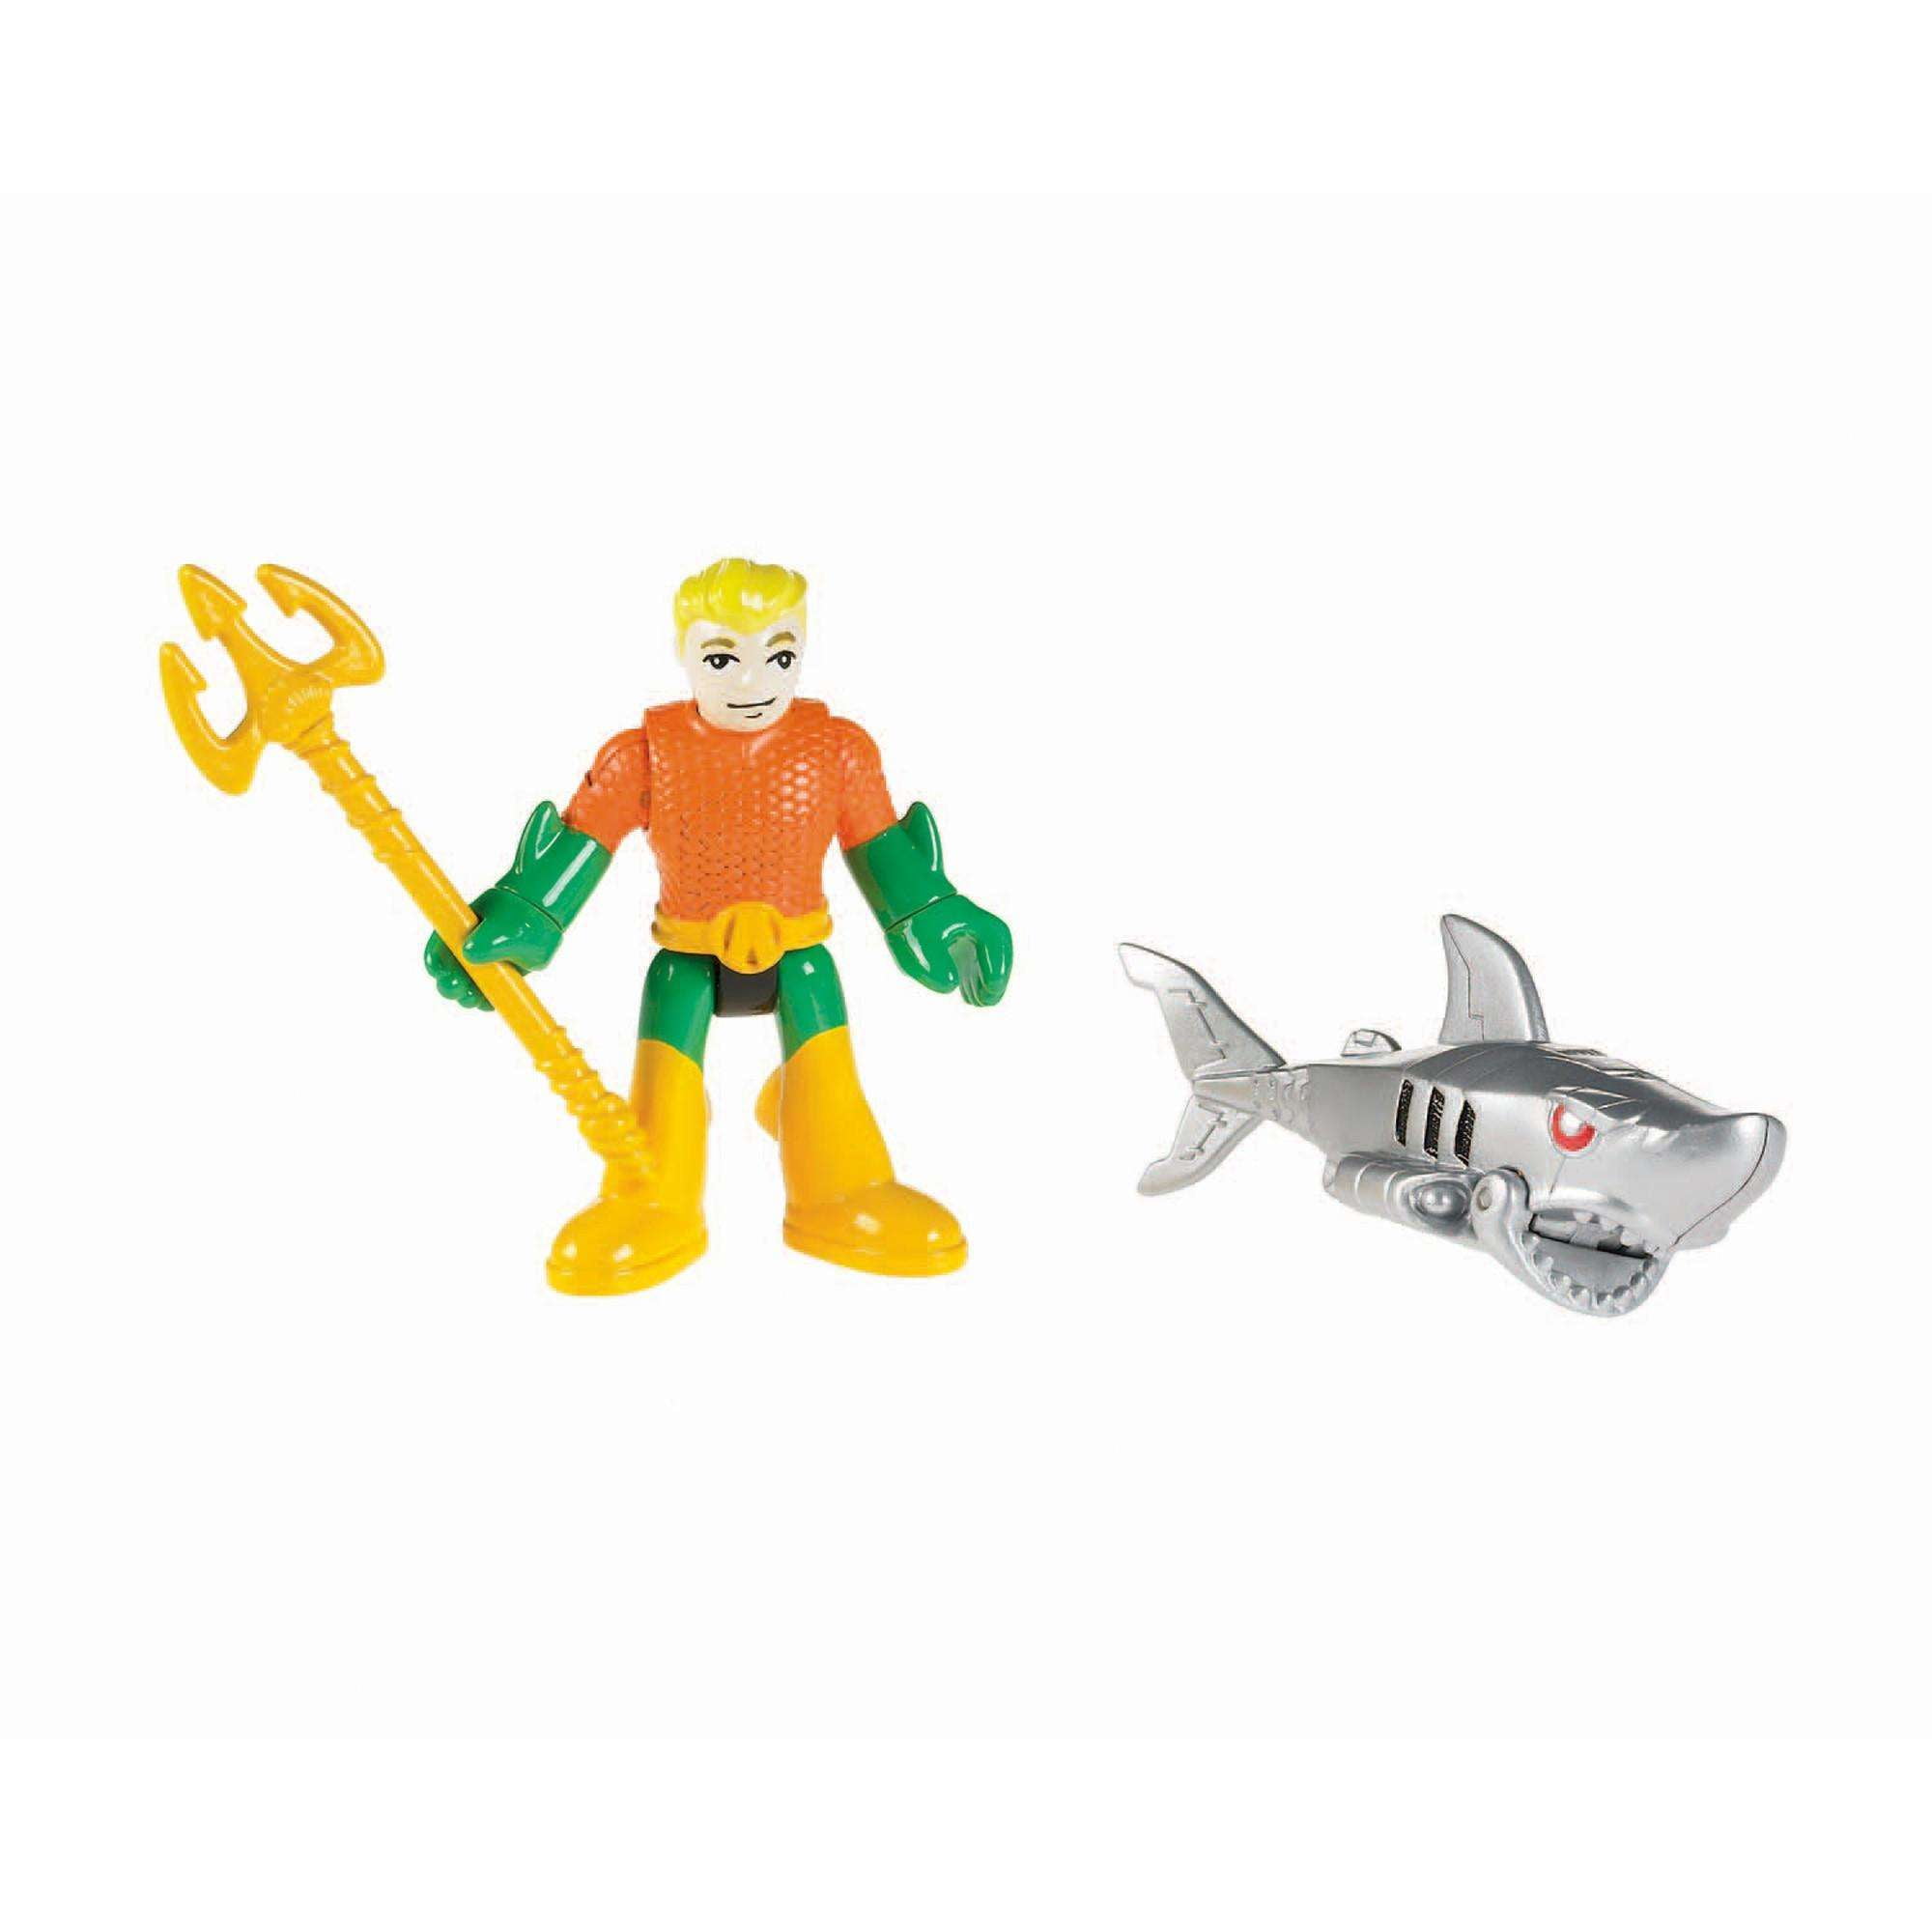 Fisher-Price Imaginext DC comic Super Friends Action Figures SHARK OCEAN SREIES